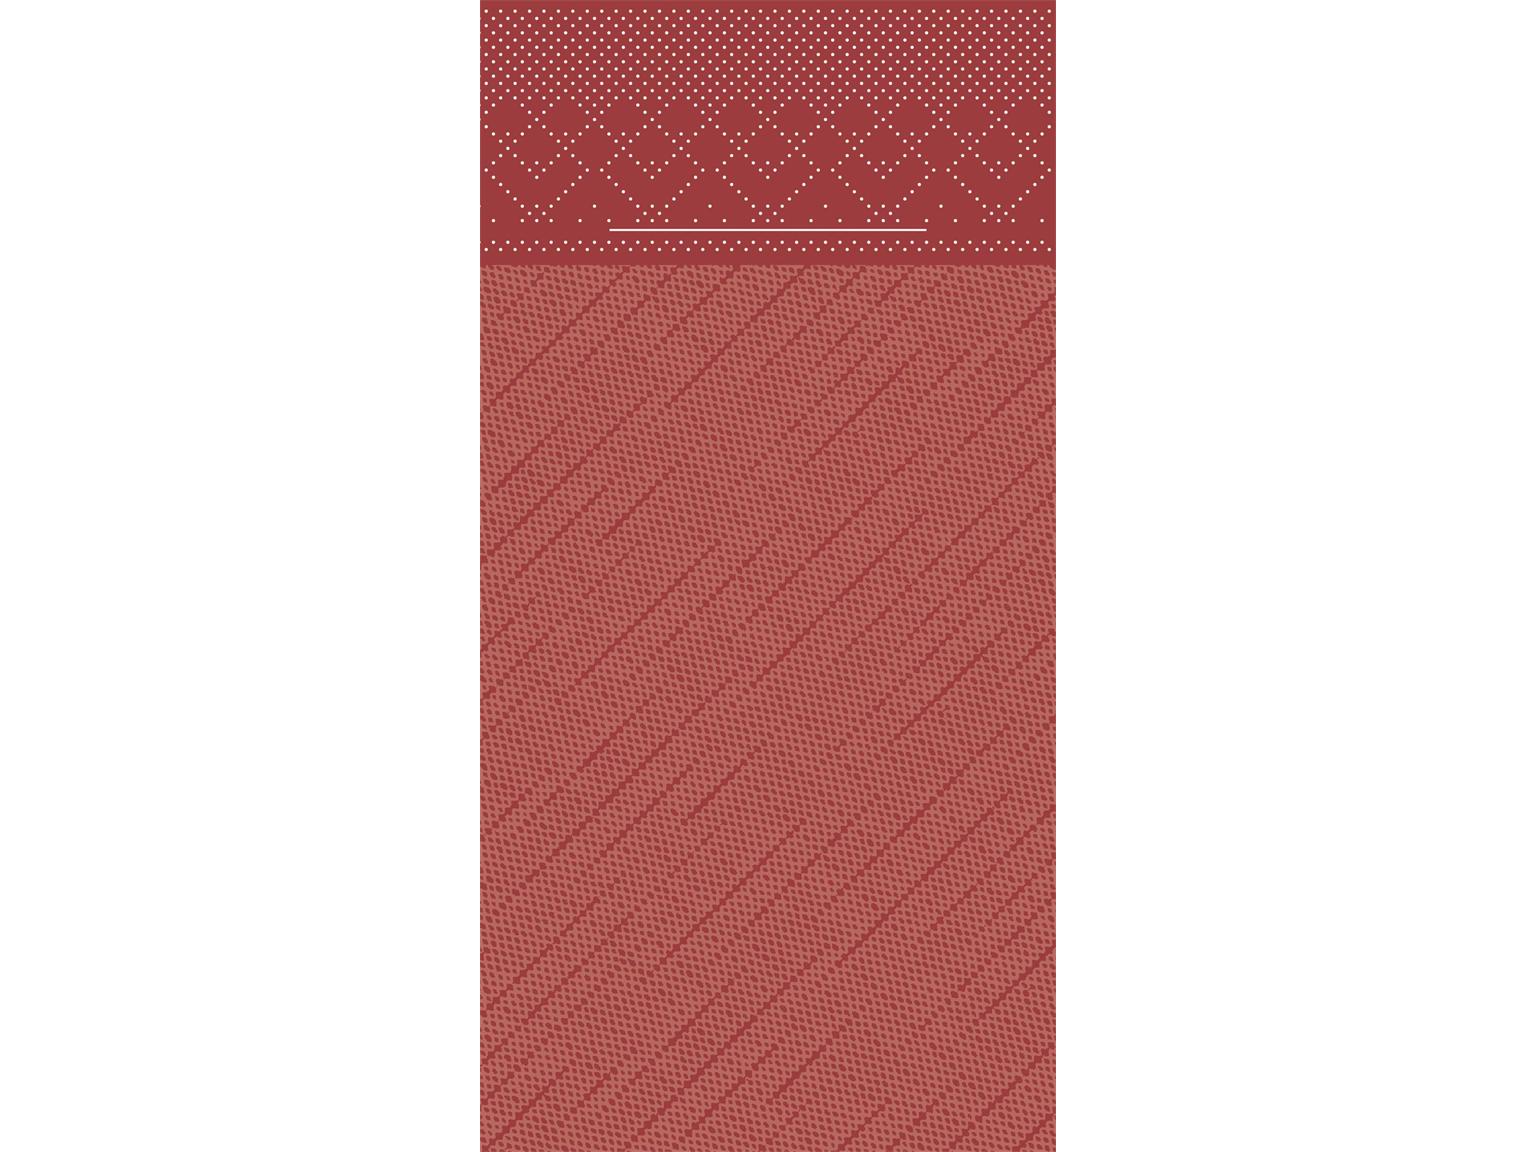 BESTECKTASCHE 4-LAGIG  40 x 40 cm, 1/8 Falz, Tissue-Deluxe